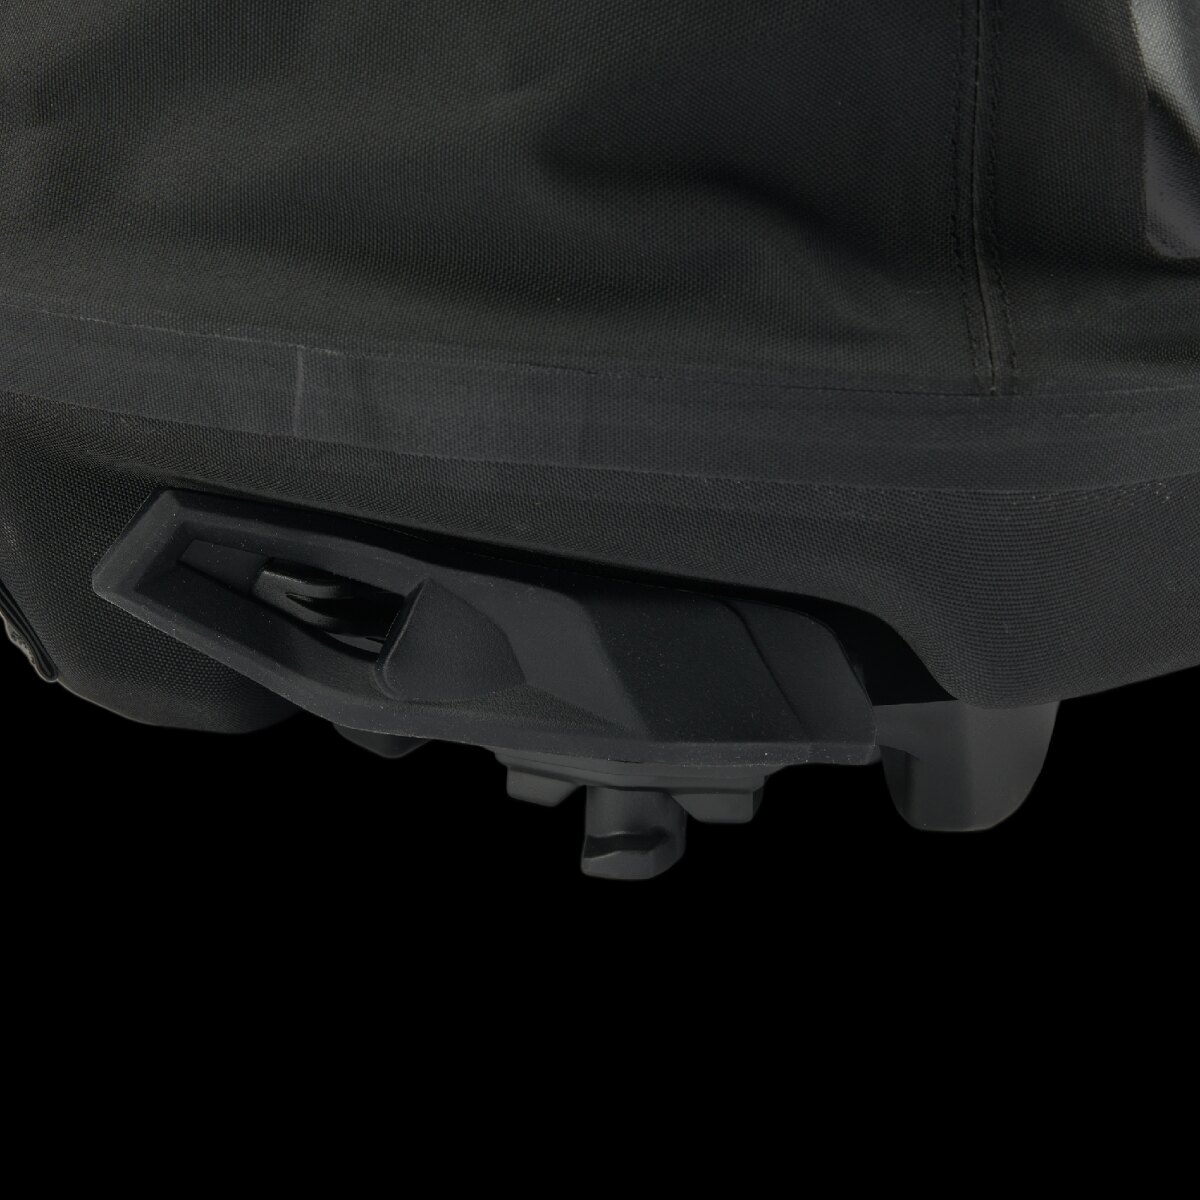 LinQ Roll top Waterproof Bag 40 L (10.6 US Gal)